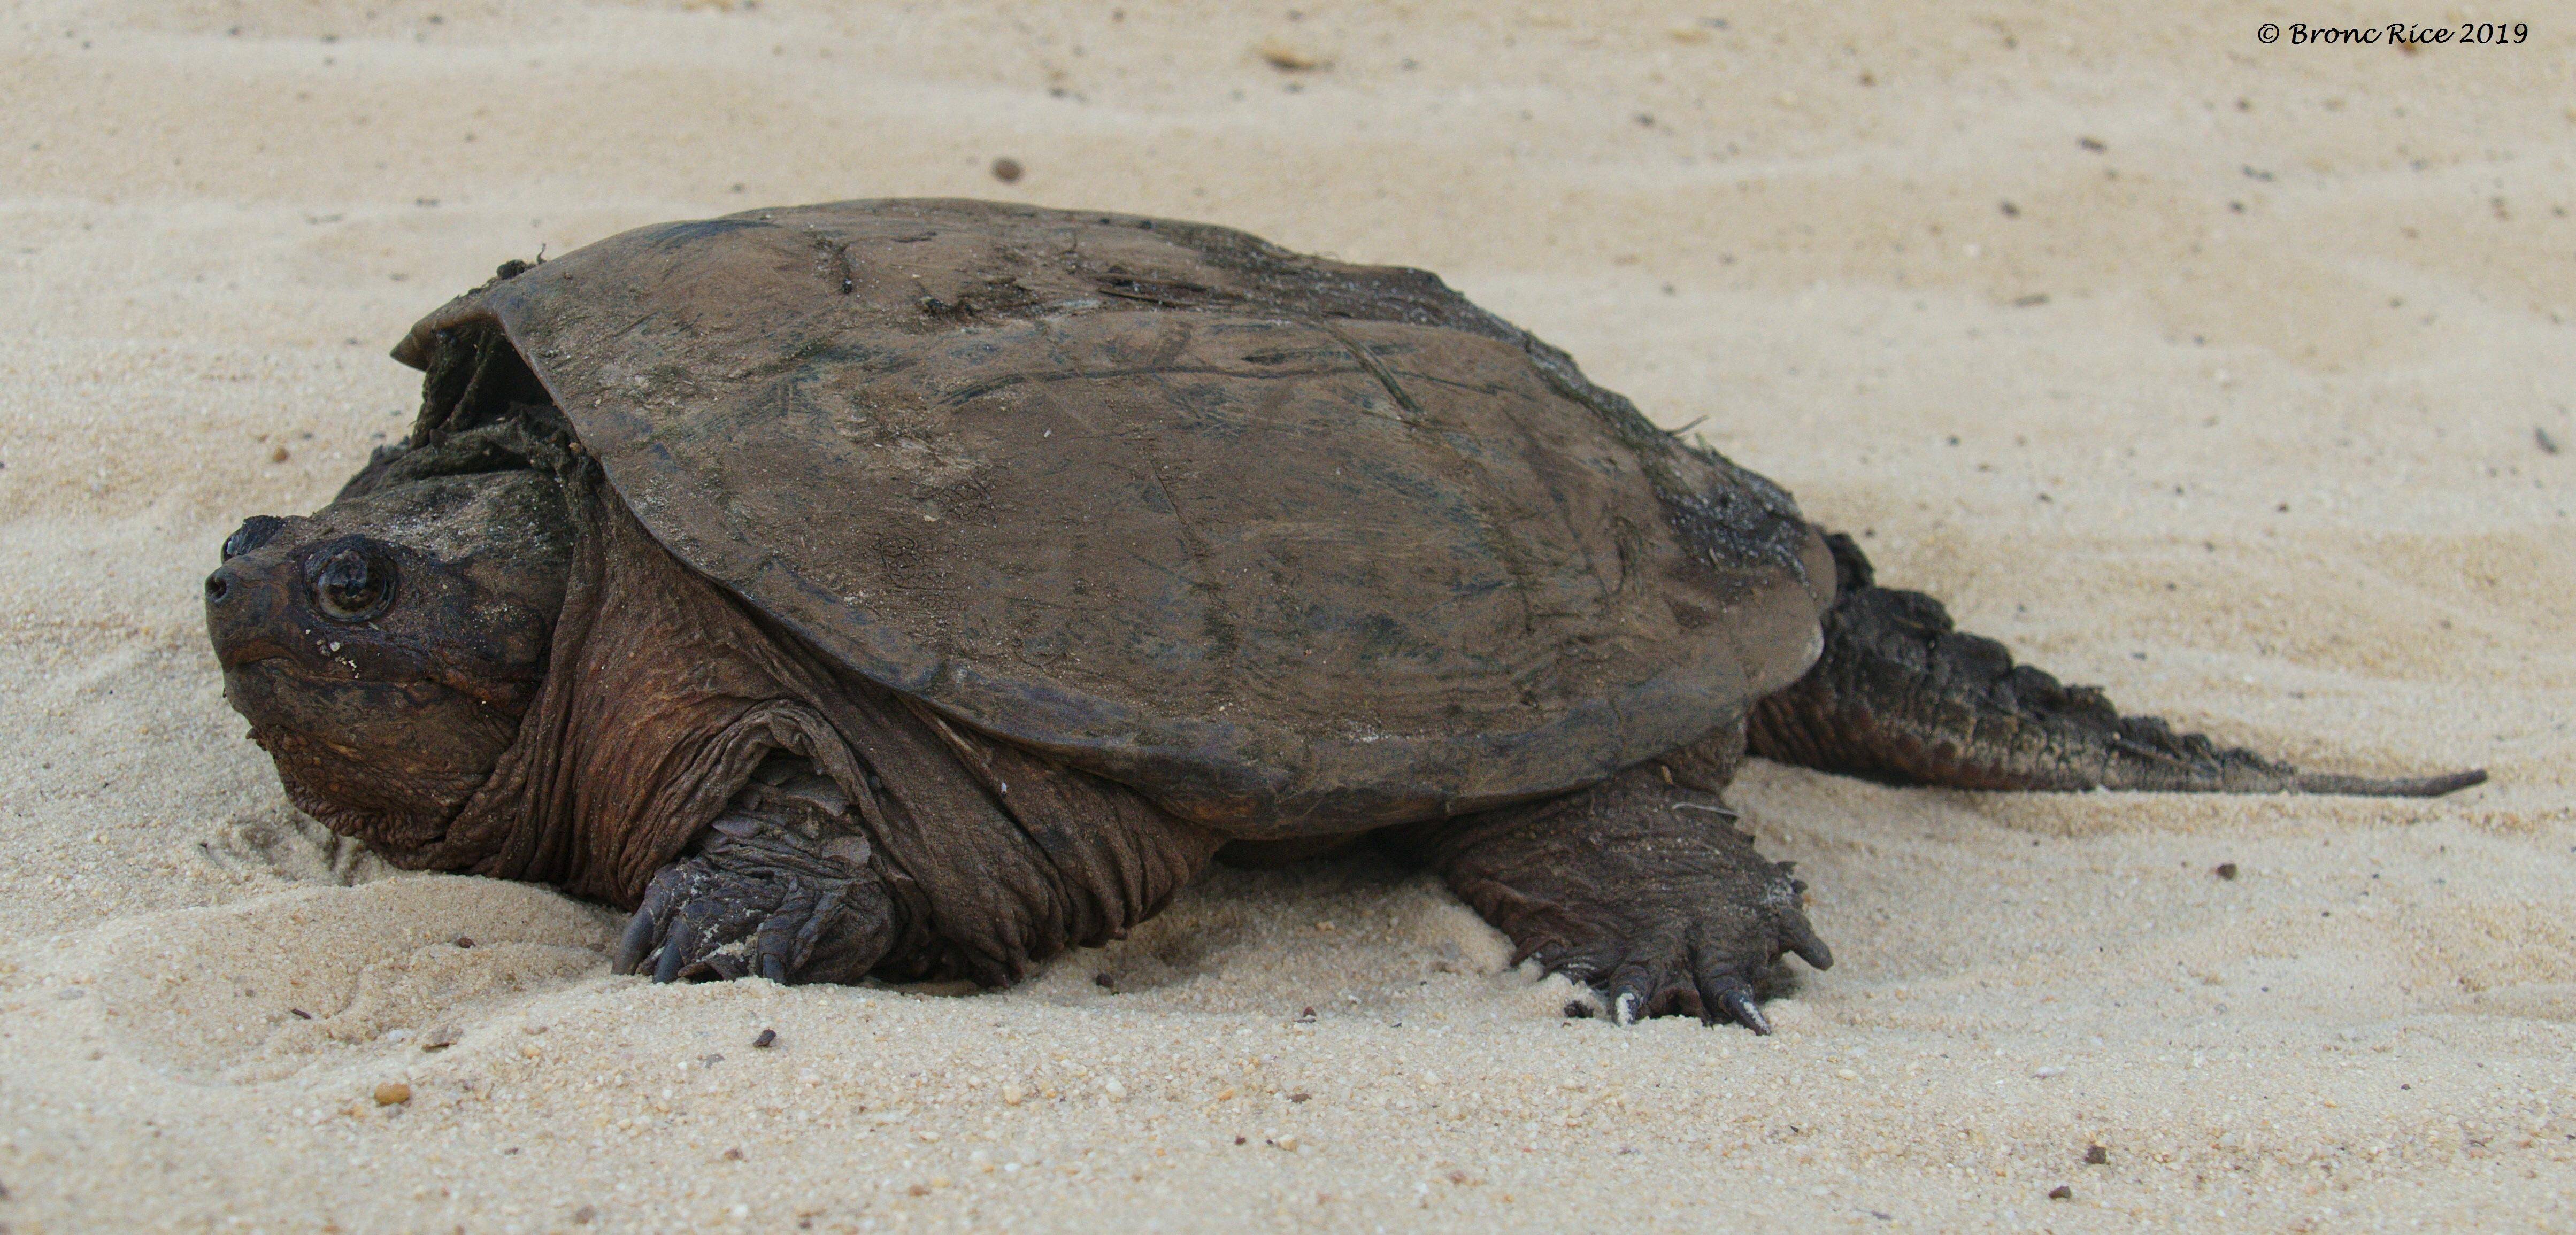 Каймановая черепаха кусающаяся: содержание, фото-видео обзор